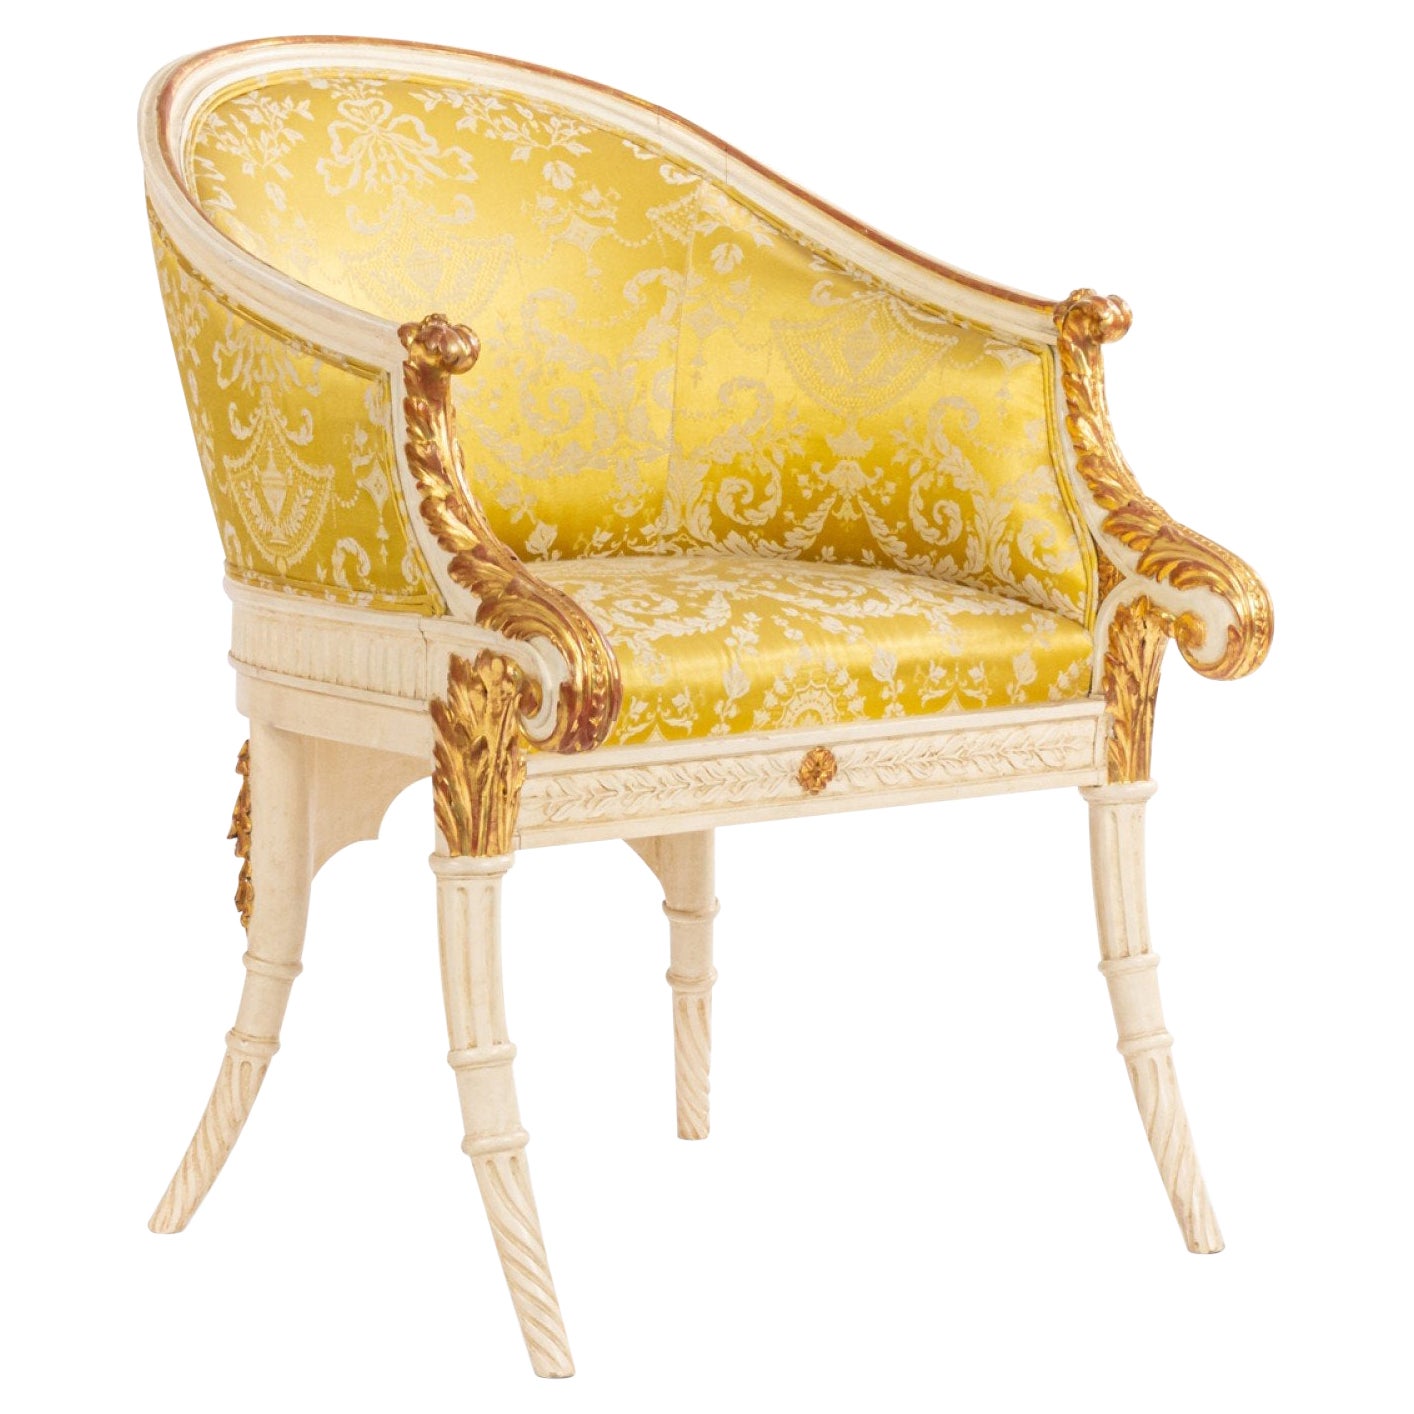 Italienischer italienischer Sessel im neoklassischen Stil des 19. Jahrhunderts in Weiß und Gold